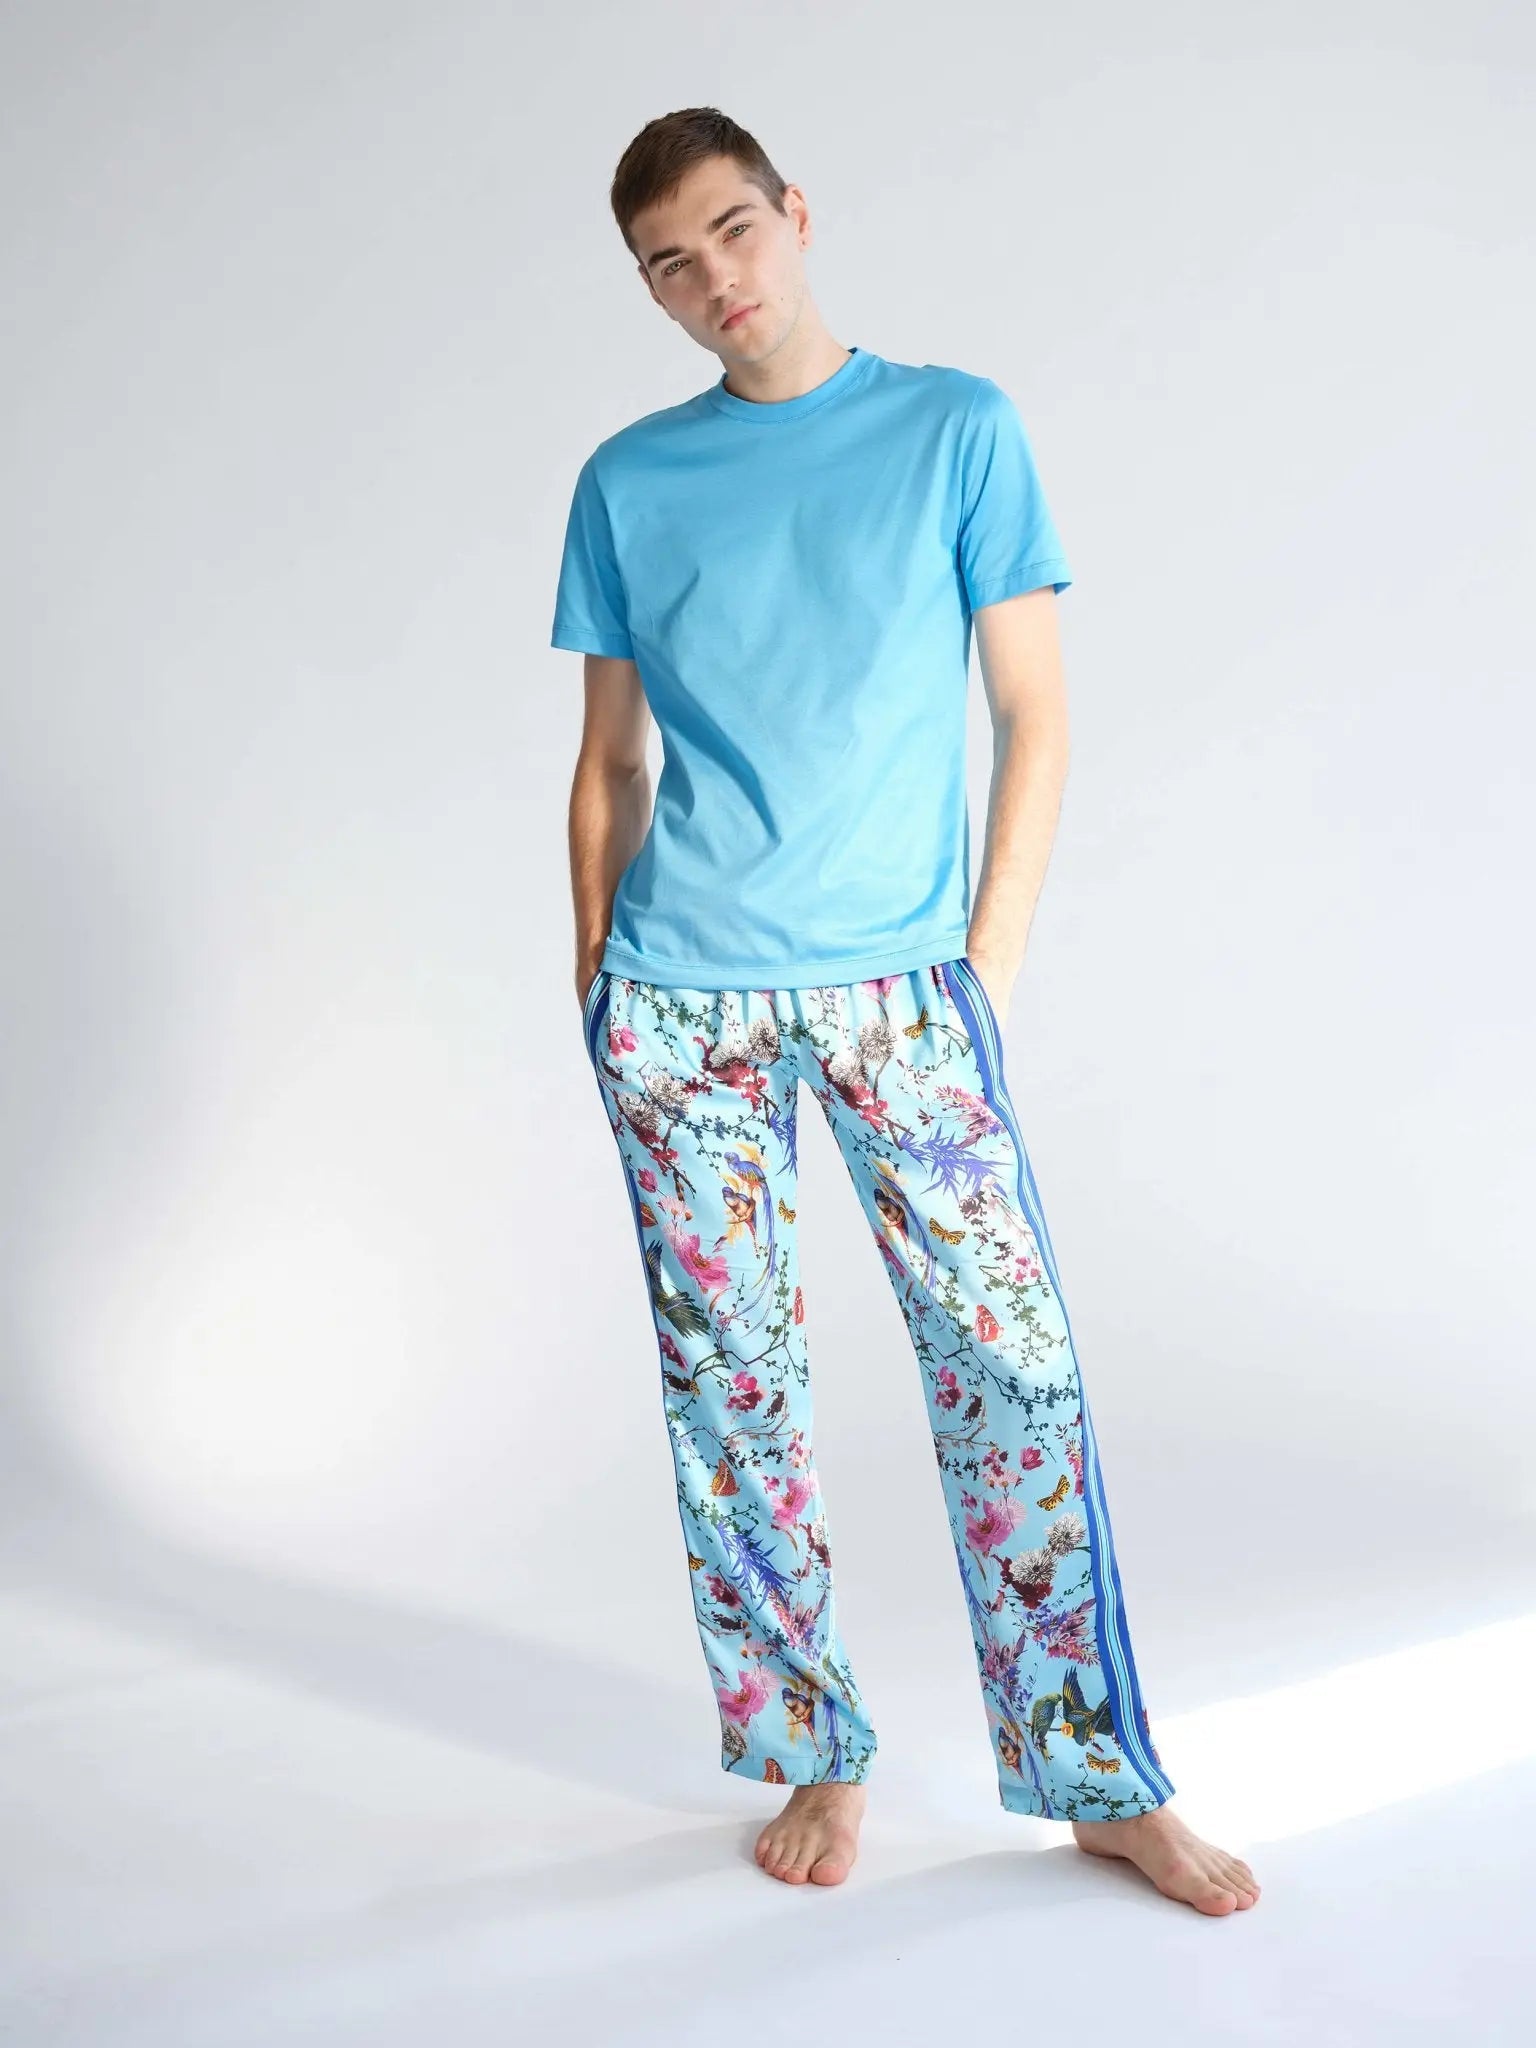 Silk Pajama Pant